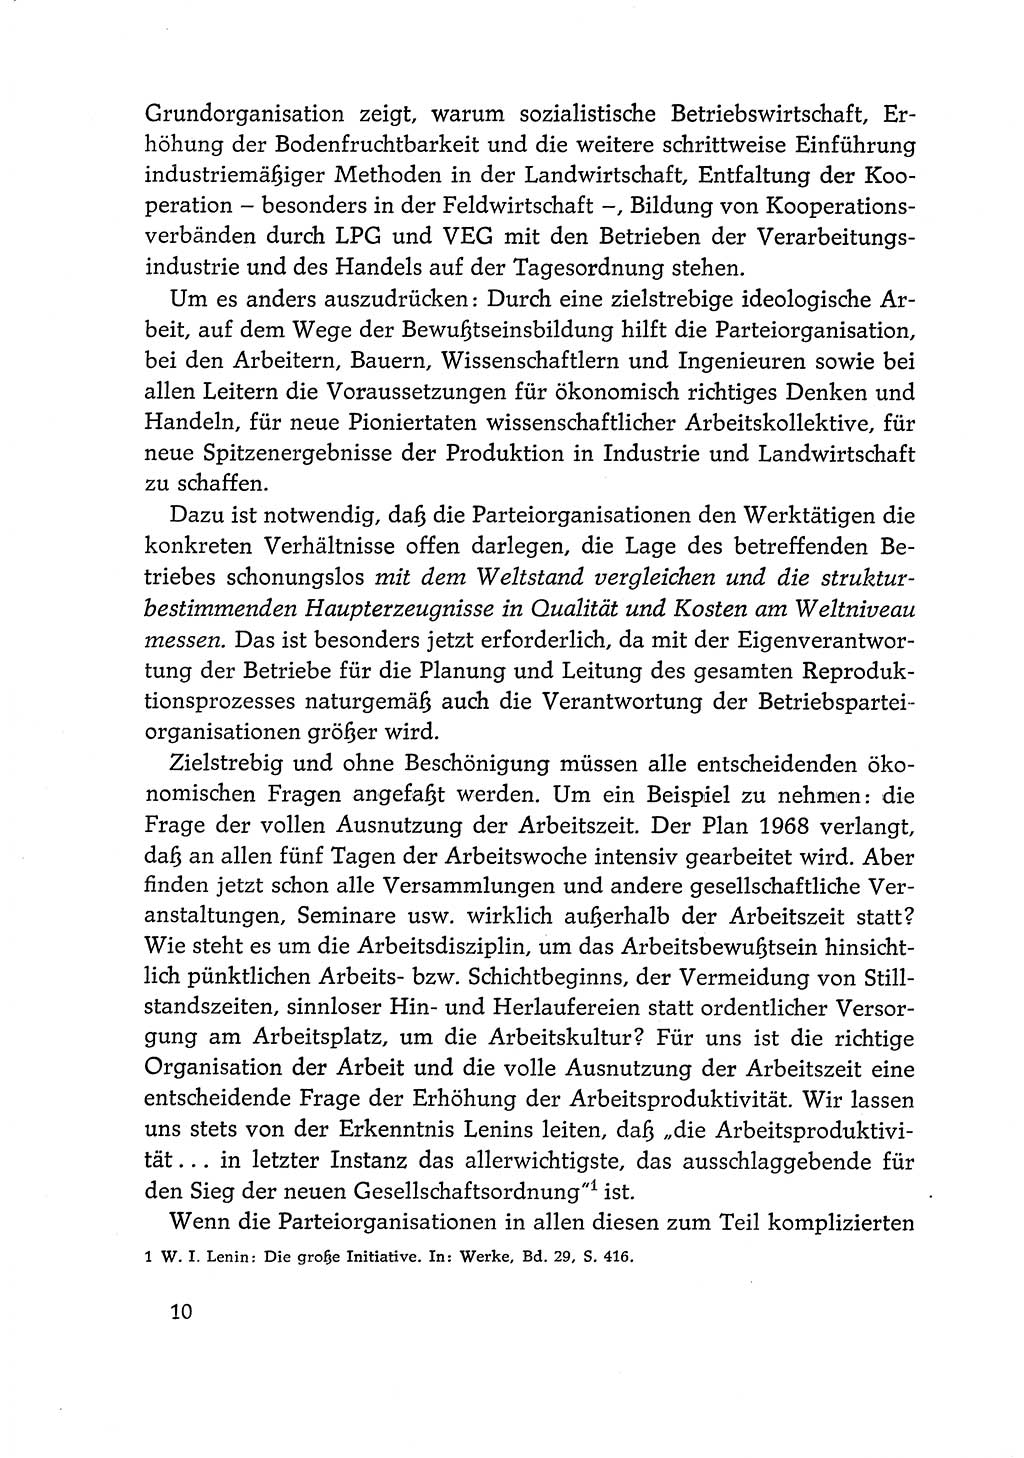 Dokumente der Sozialistischen Einheitspartei Deutschlands (SED) [Deutsche Demokratische Republik (DDR)] 1968-1969, Seite 10 (Dok. SED DDR 1968-1969, S. 10)